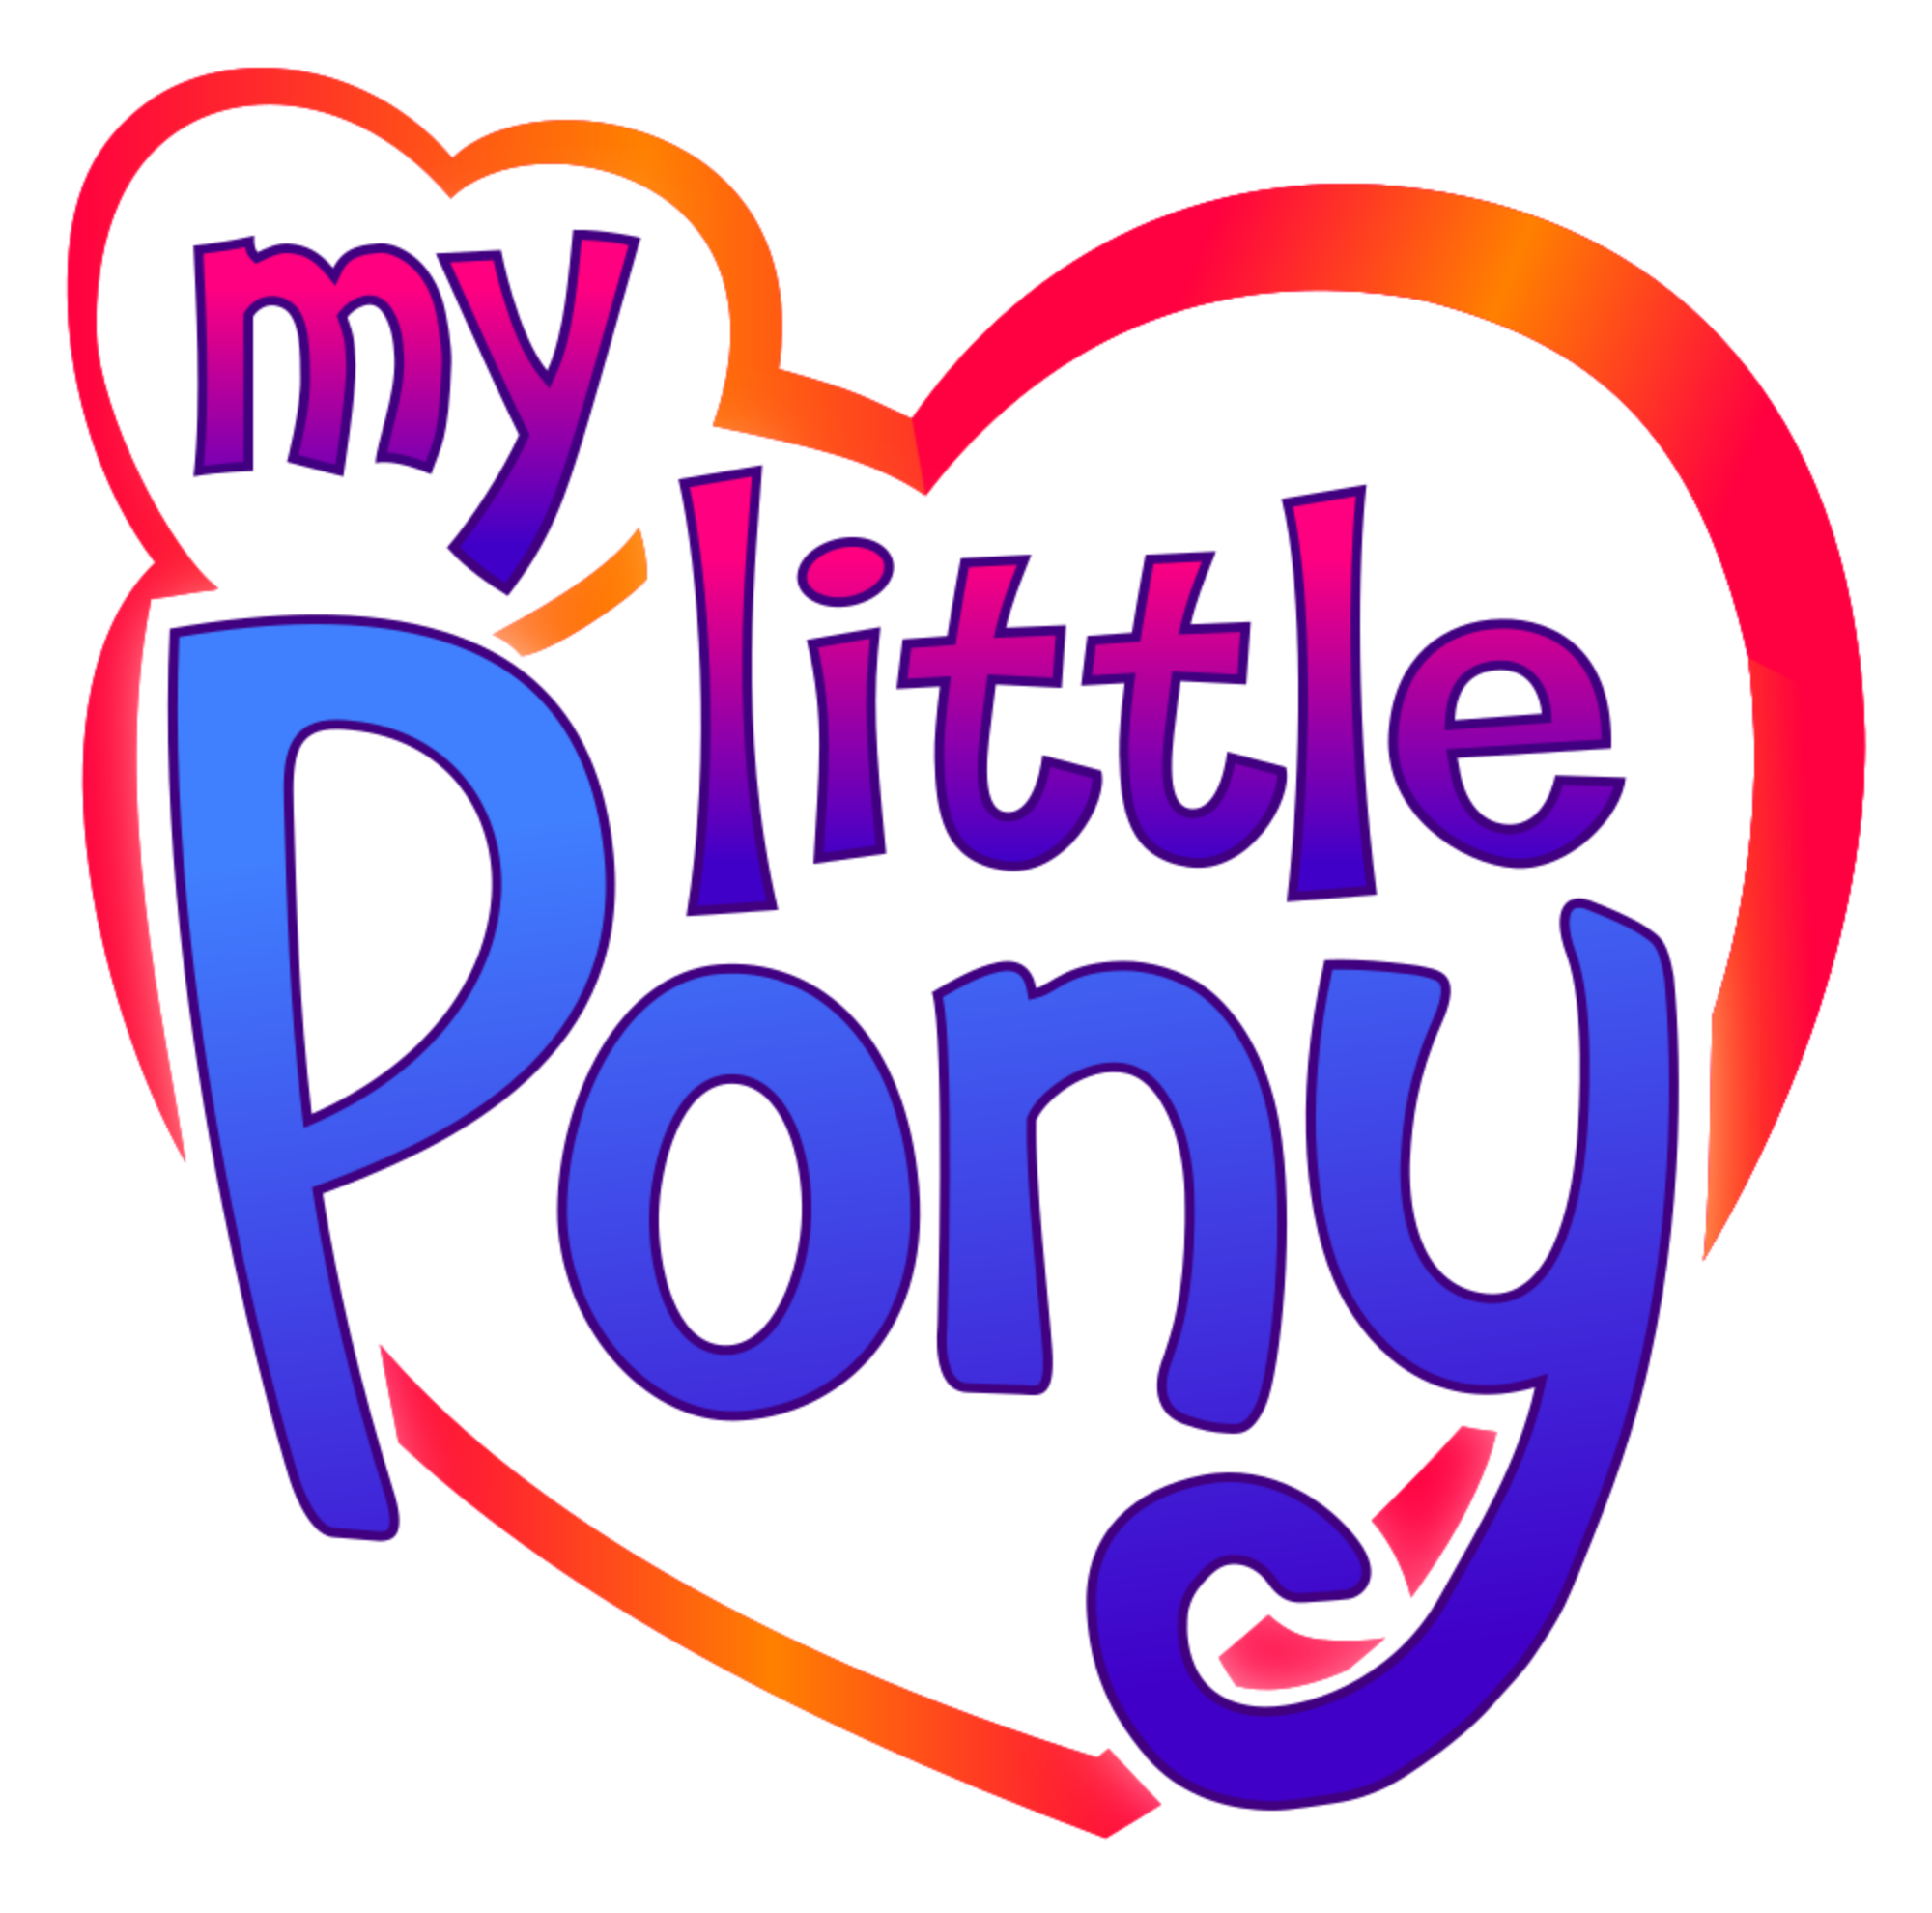 My Little Pony Meet the Ponies 